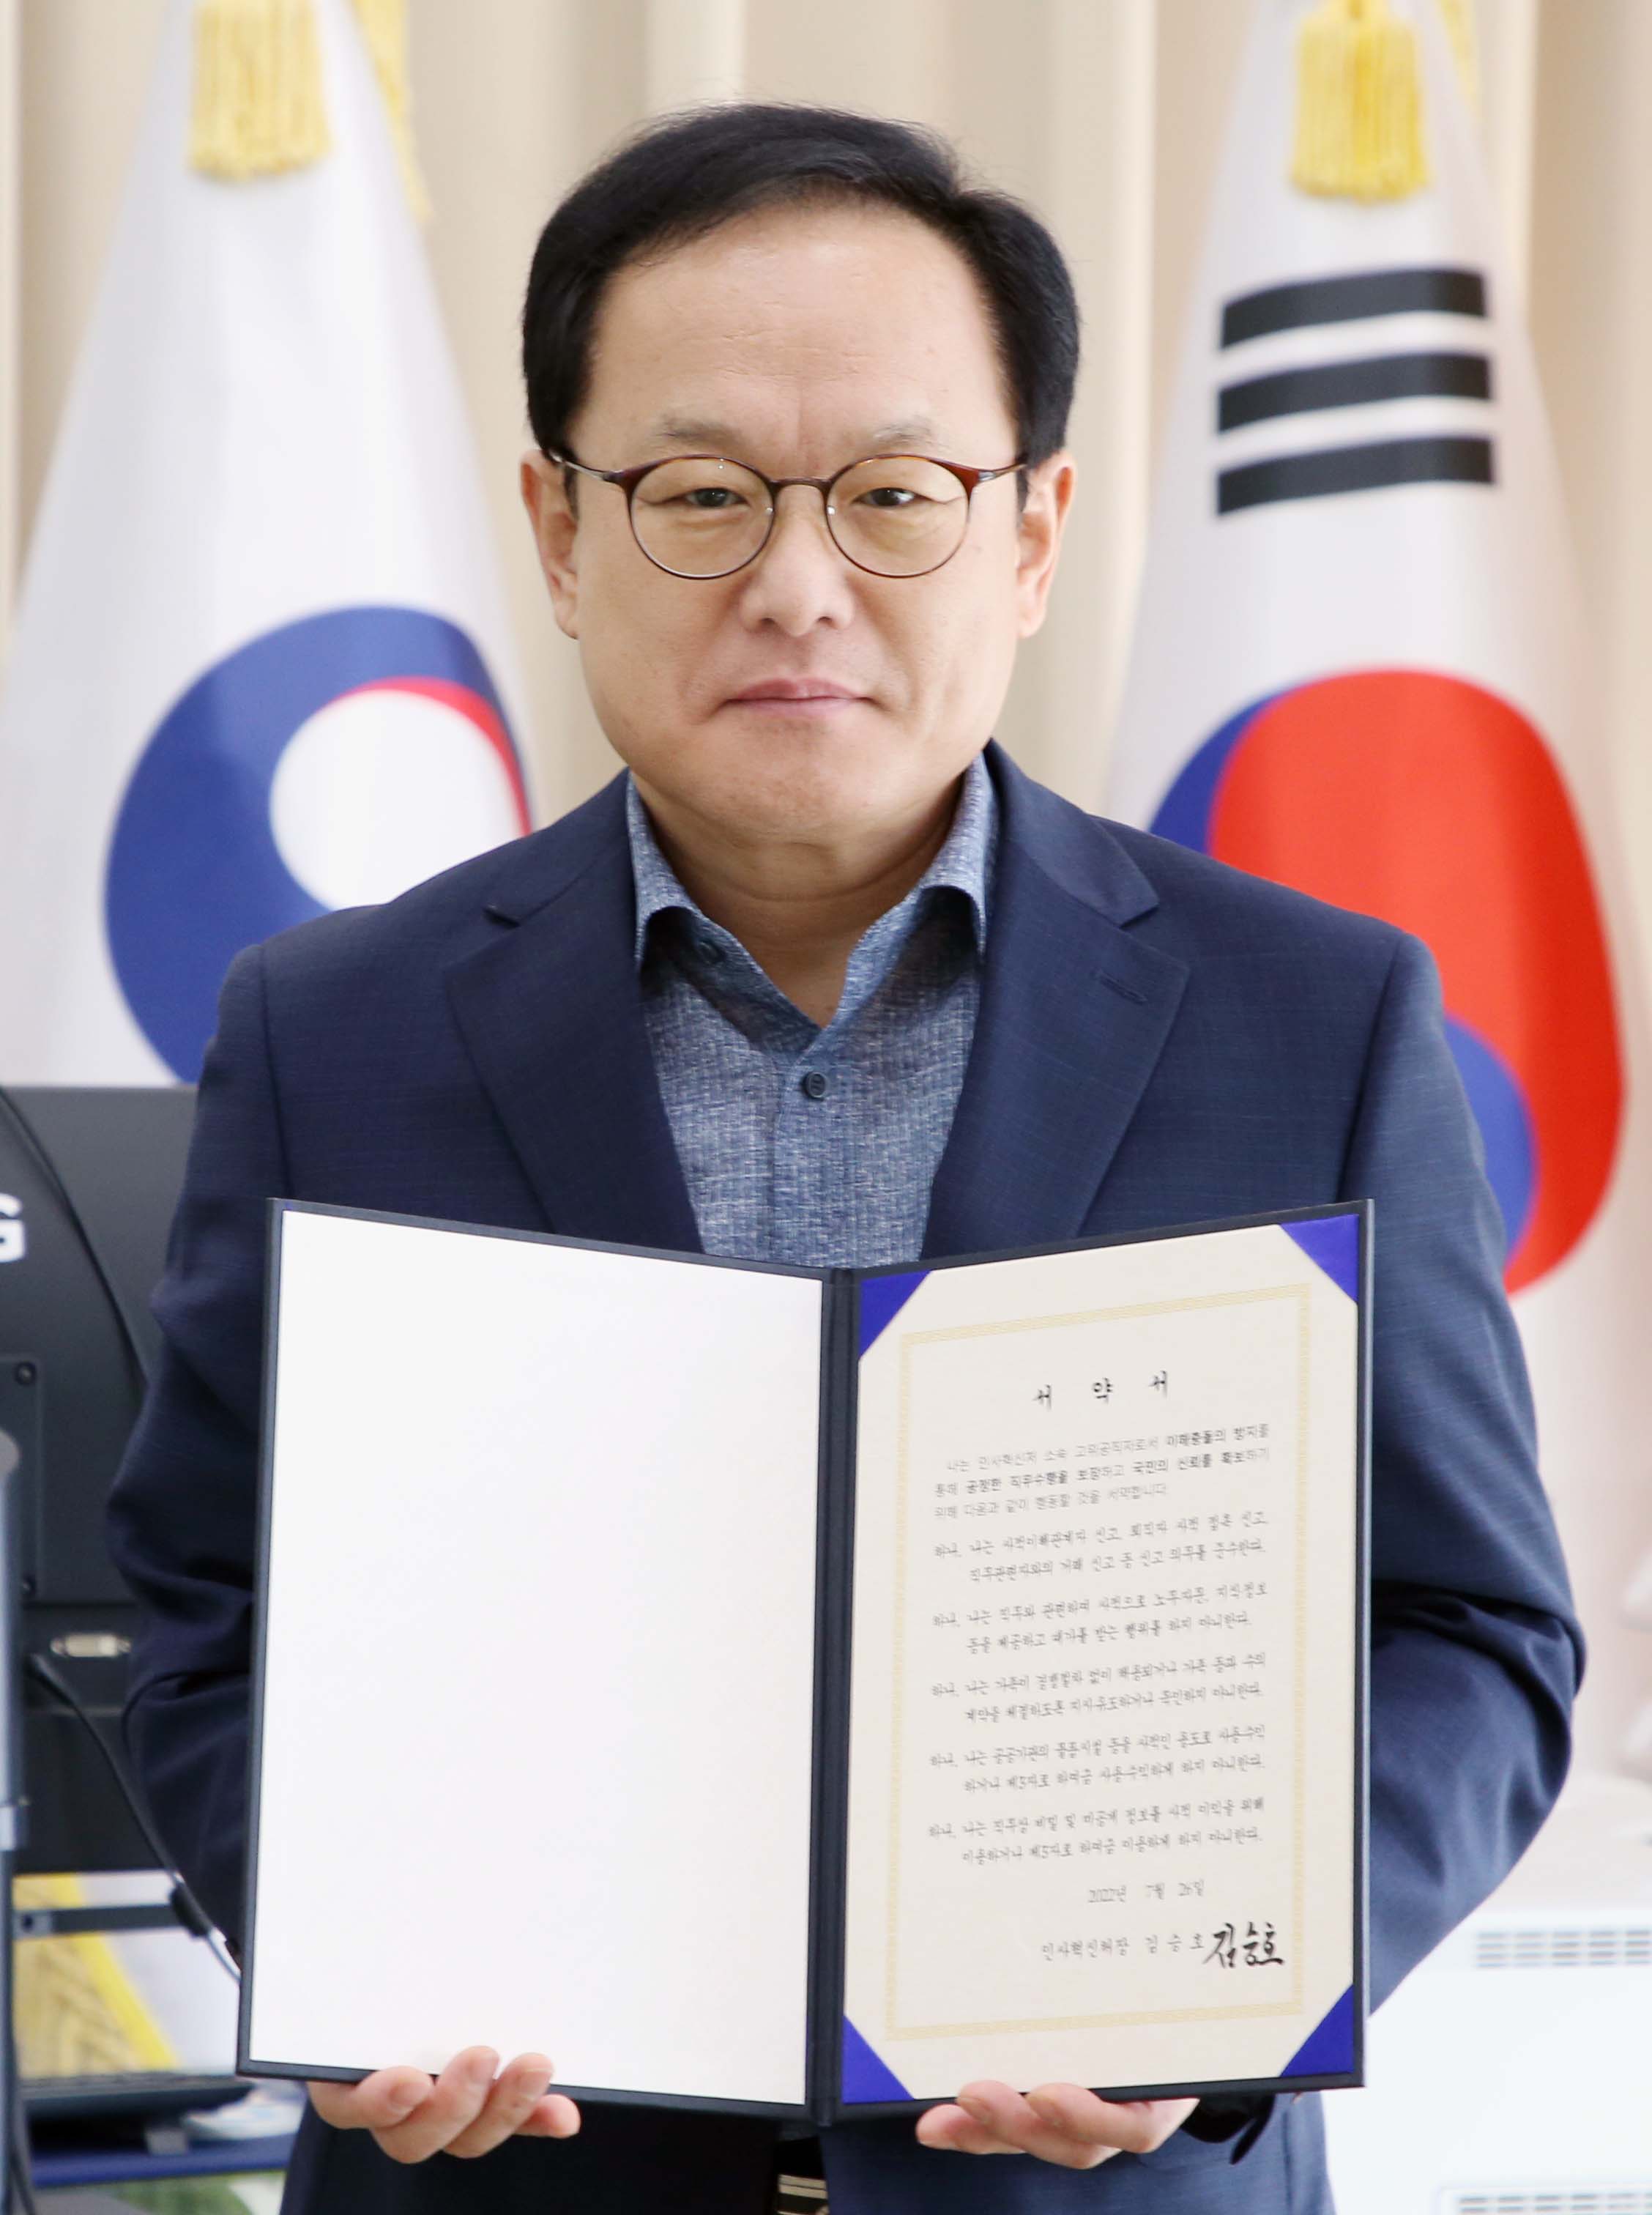 김승호 인사혁신처장이 이해충돌 방지제도 준수 서약서를 들고 있는 모습